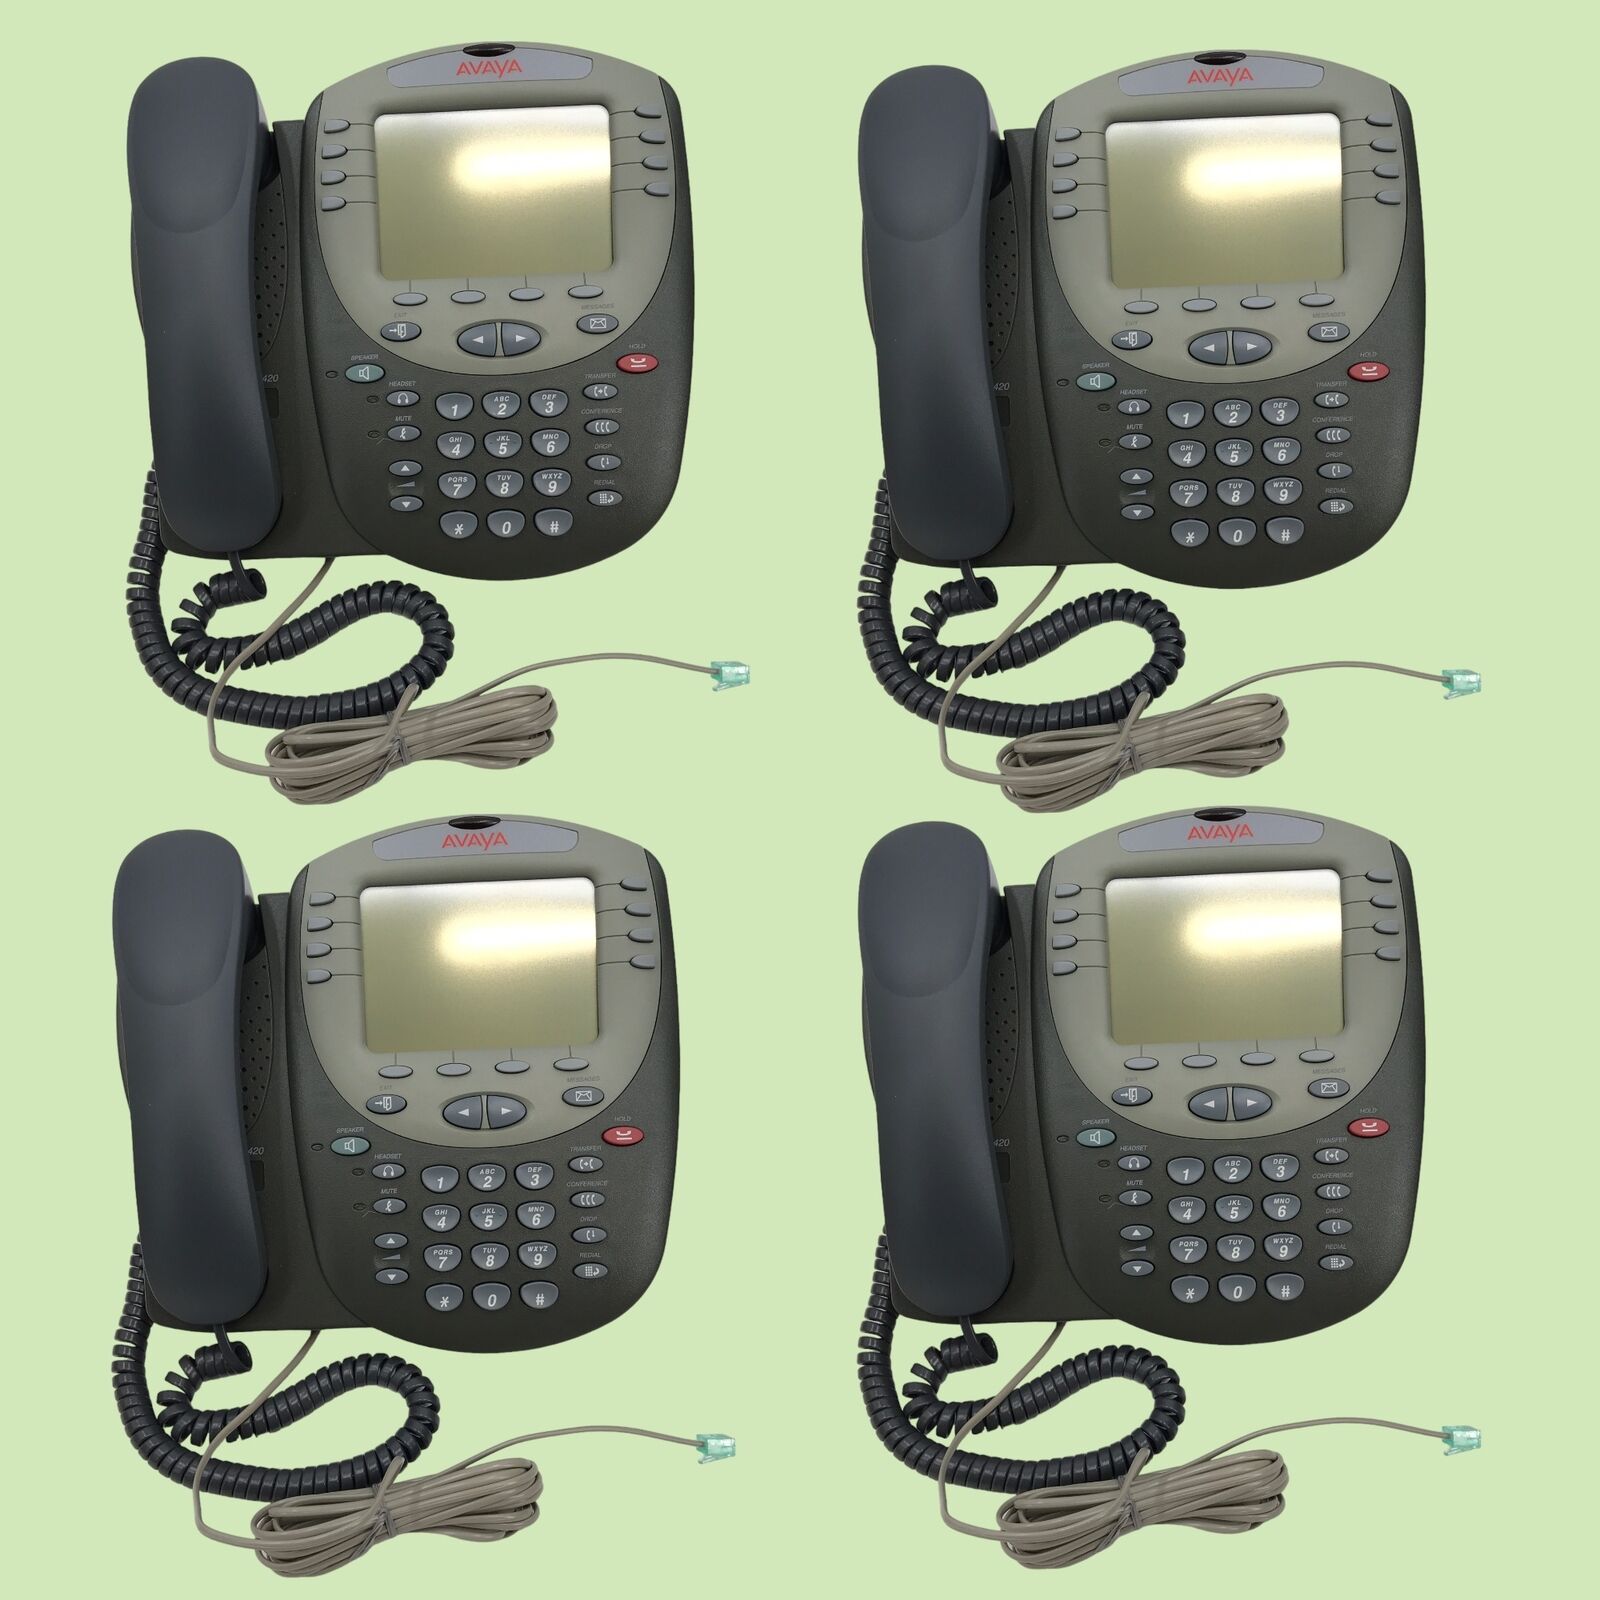 Lot of 4 Avaya 2420 Digital Telephones 2420D01B-2001 700381585